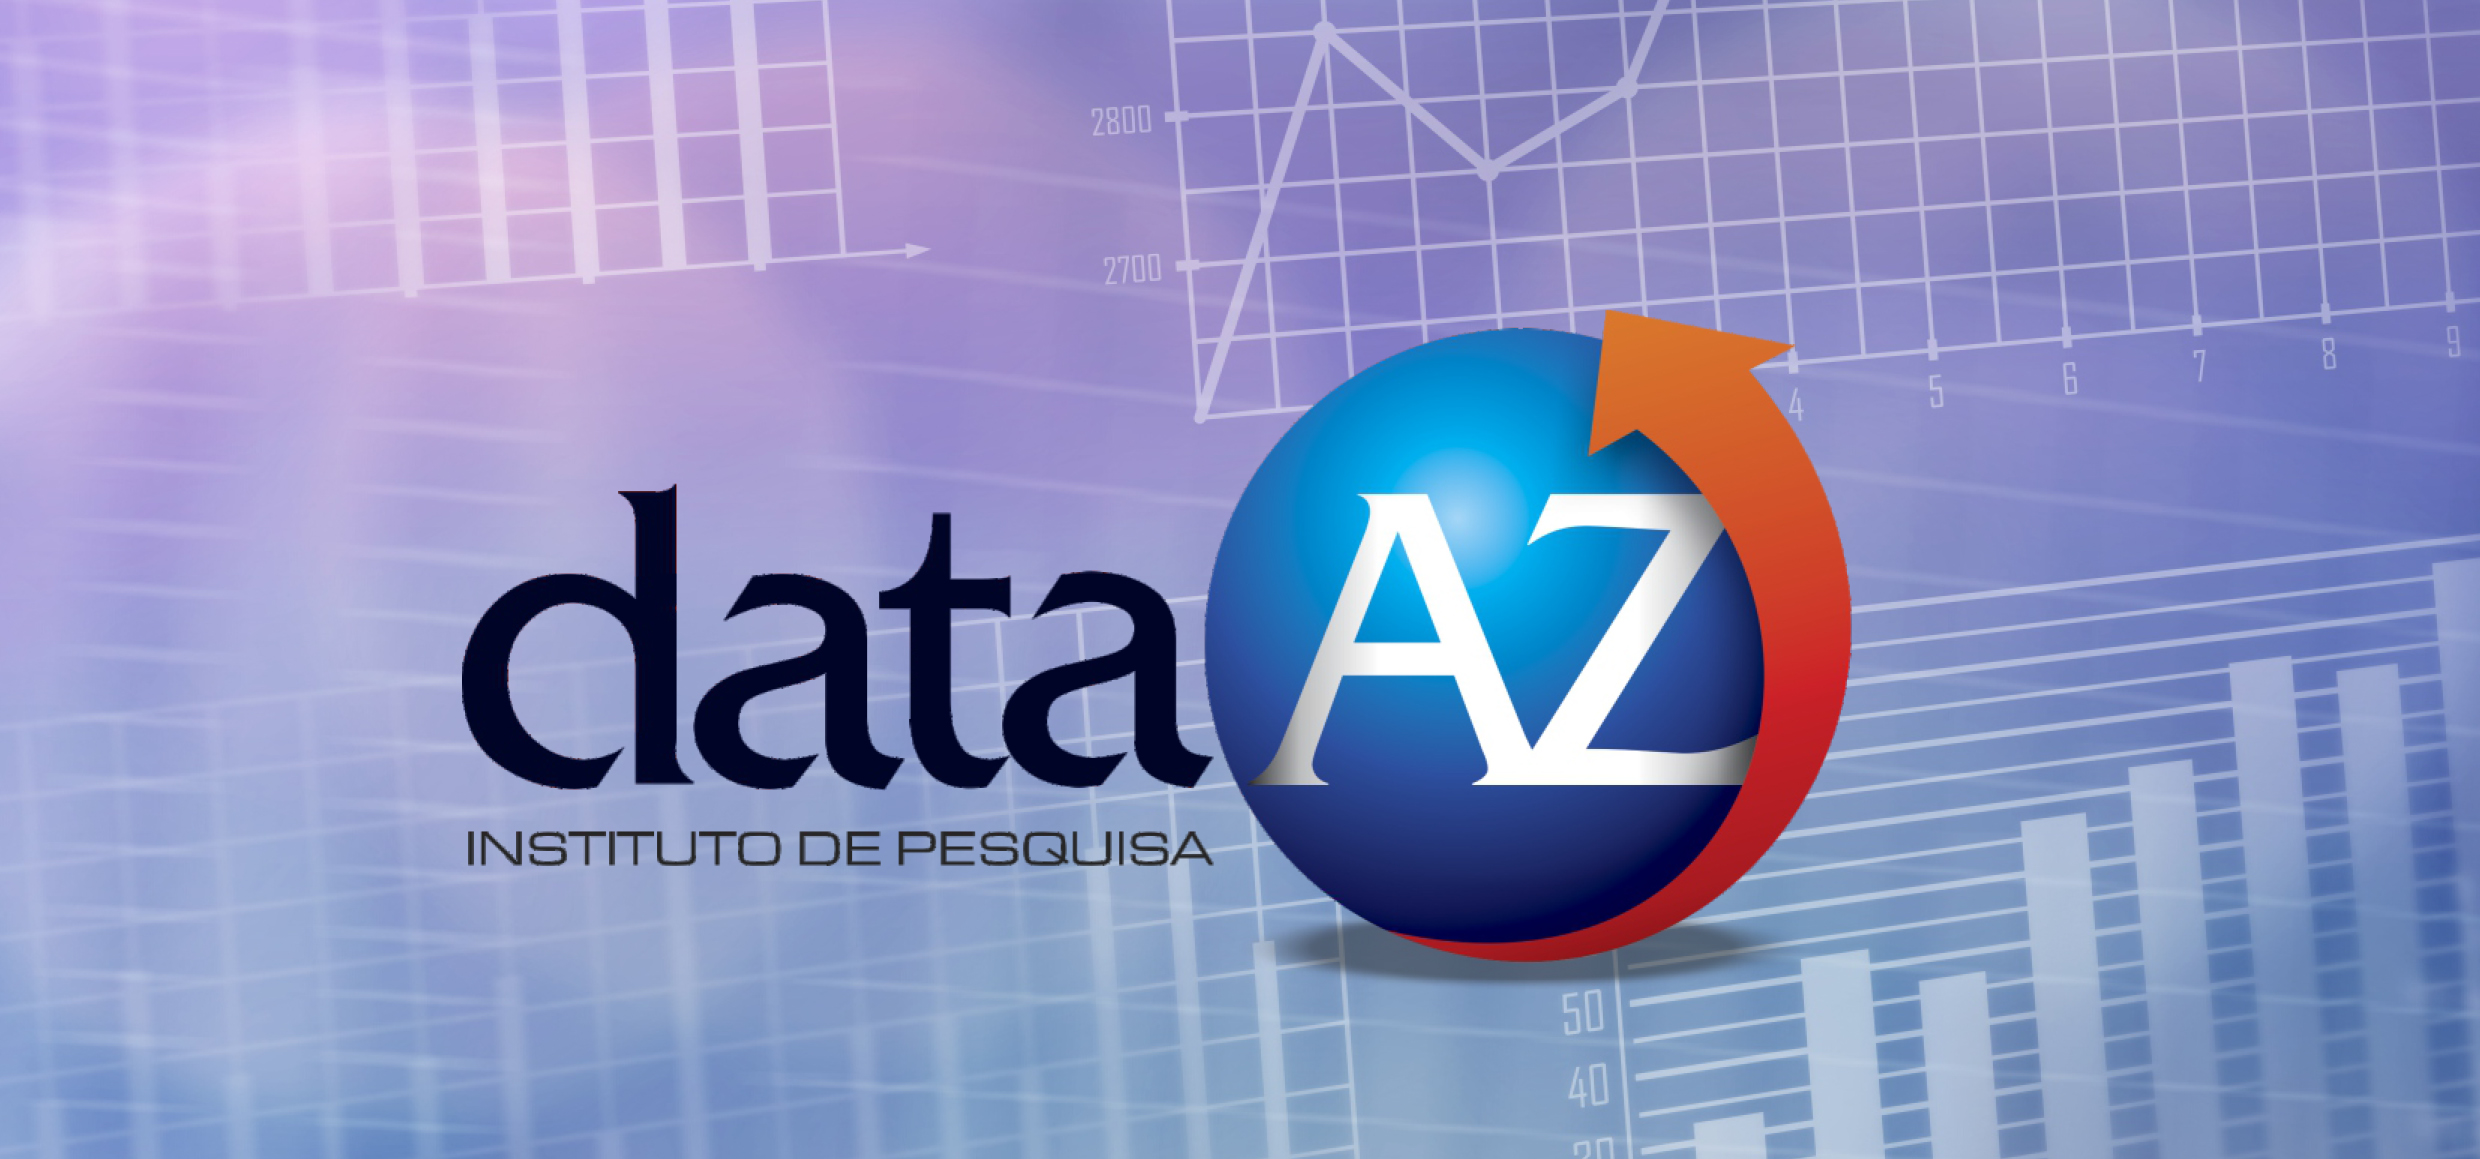 Instituto Data AZ se consolida no mercado com grande número de acertos em pesquisas no Piauí